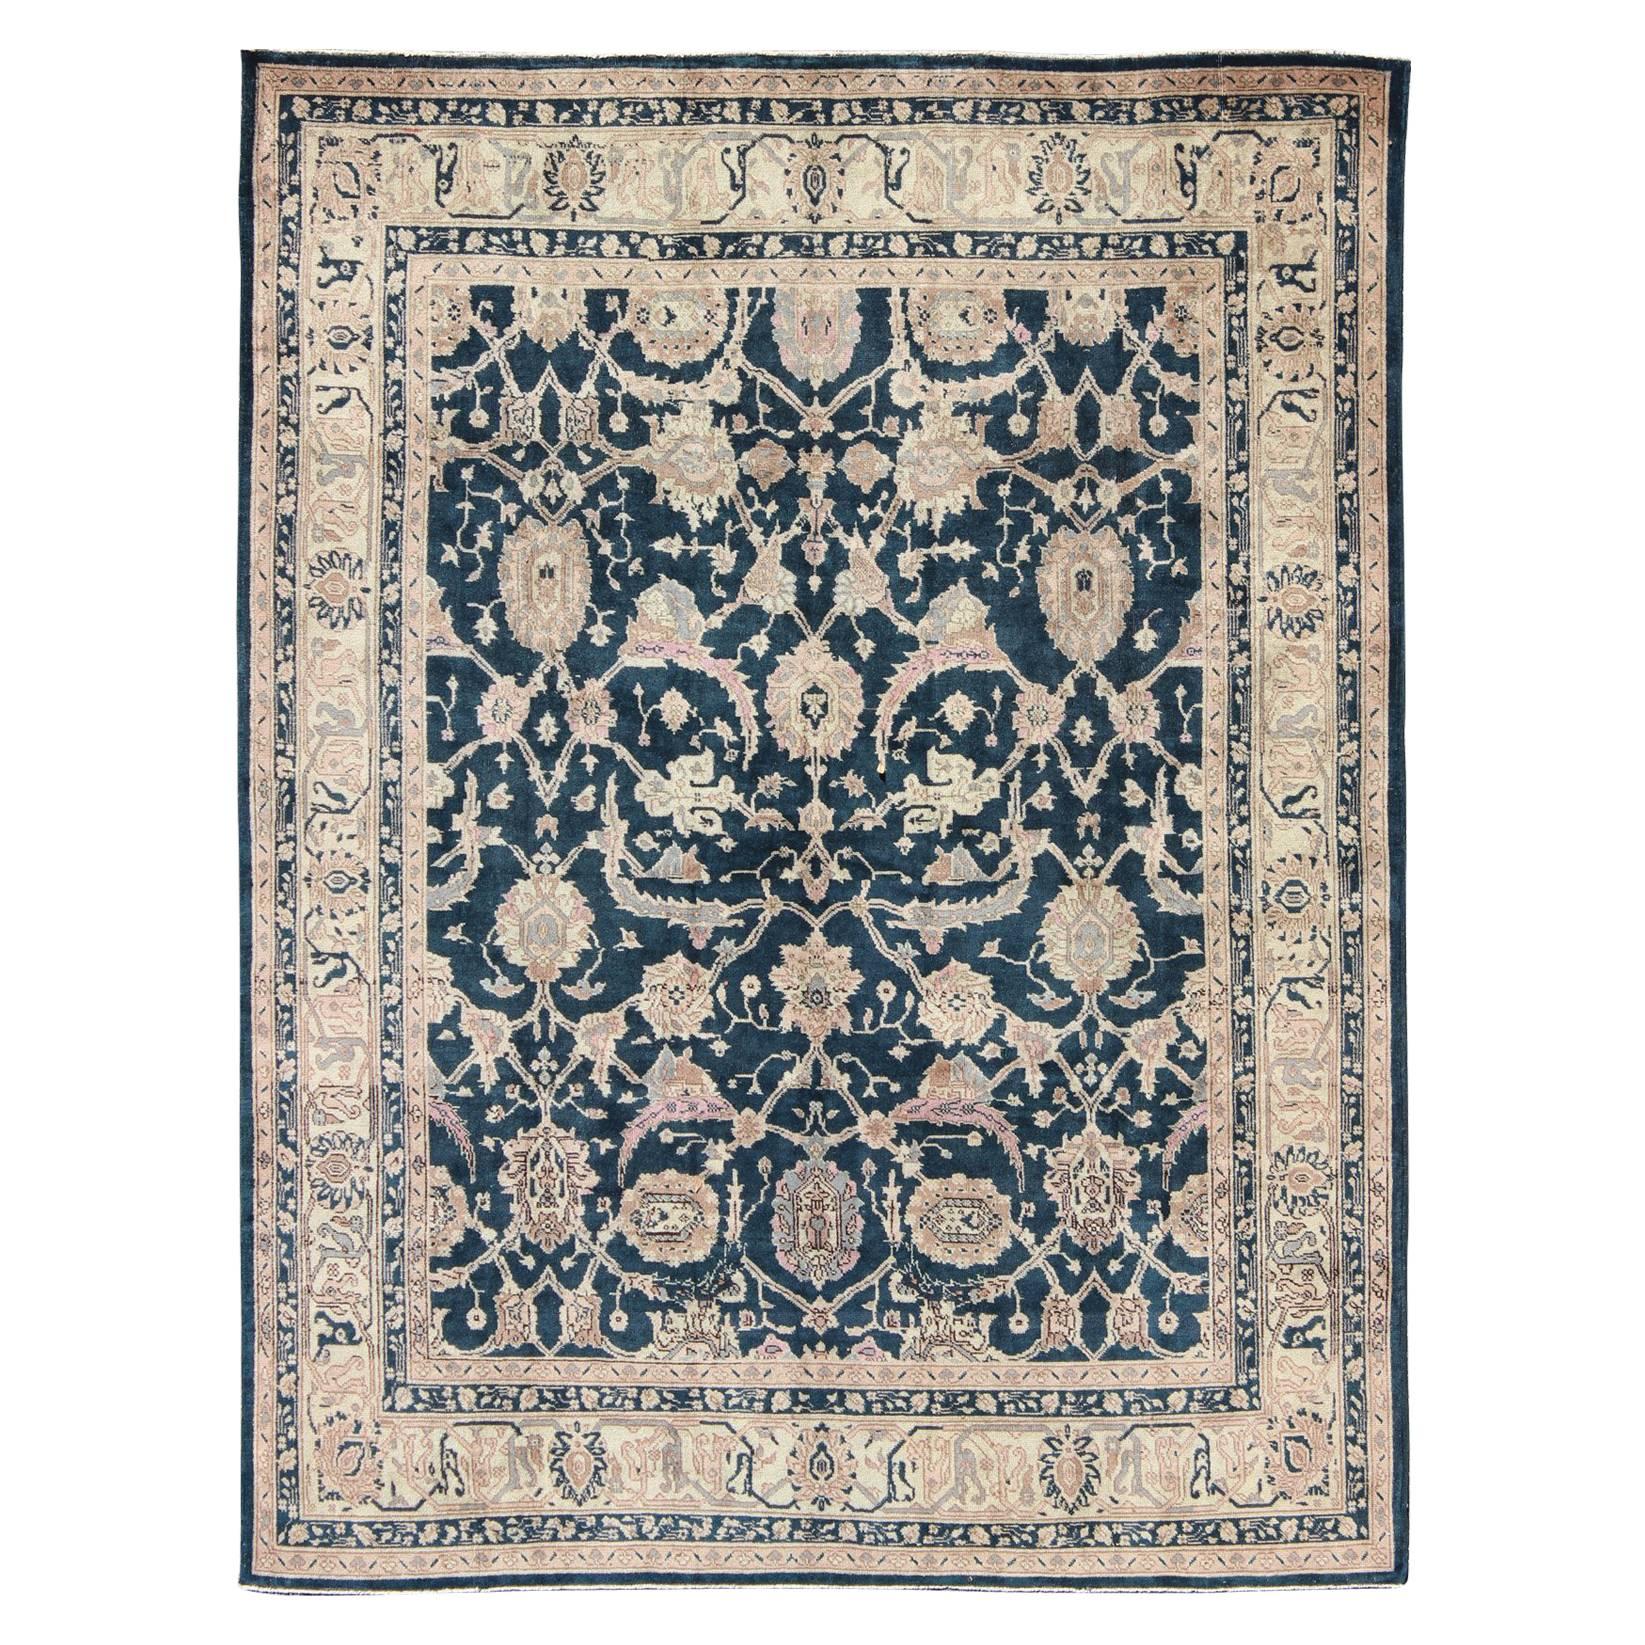 Türkischer Vintage-Teppich mit tiefem marineblauem Hintergrund und schönen botanischen Motiven